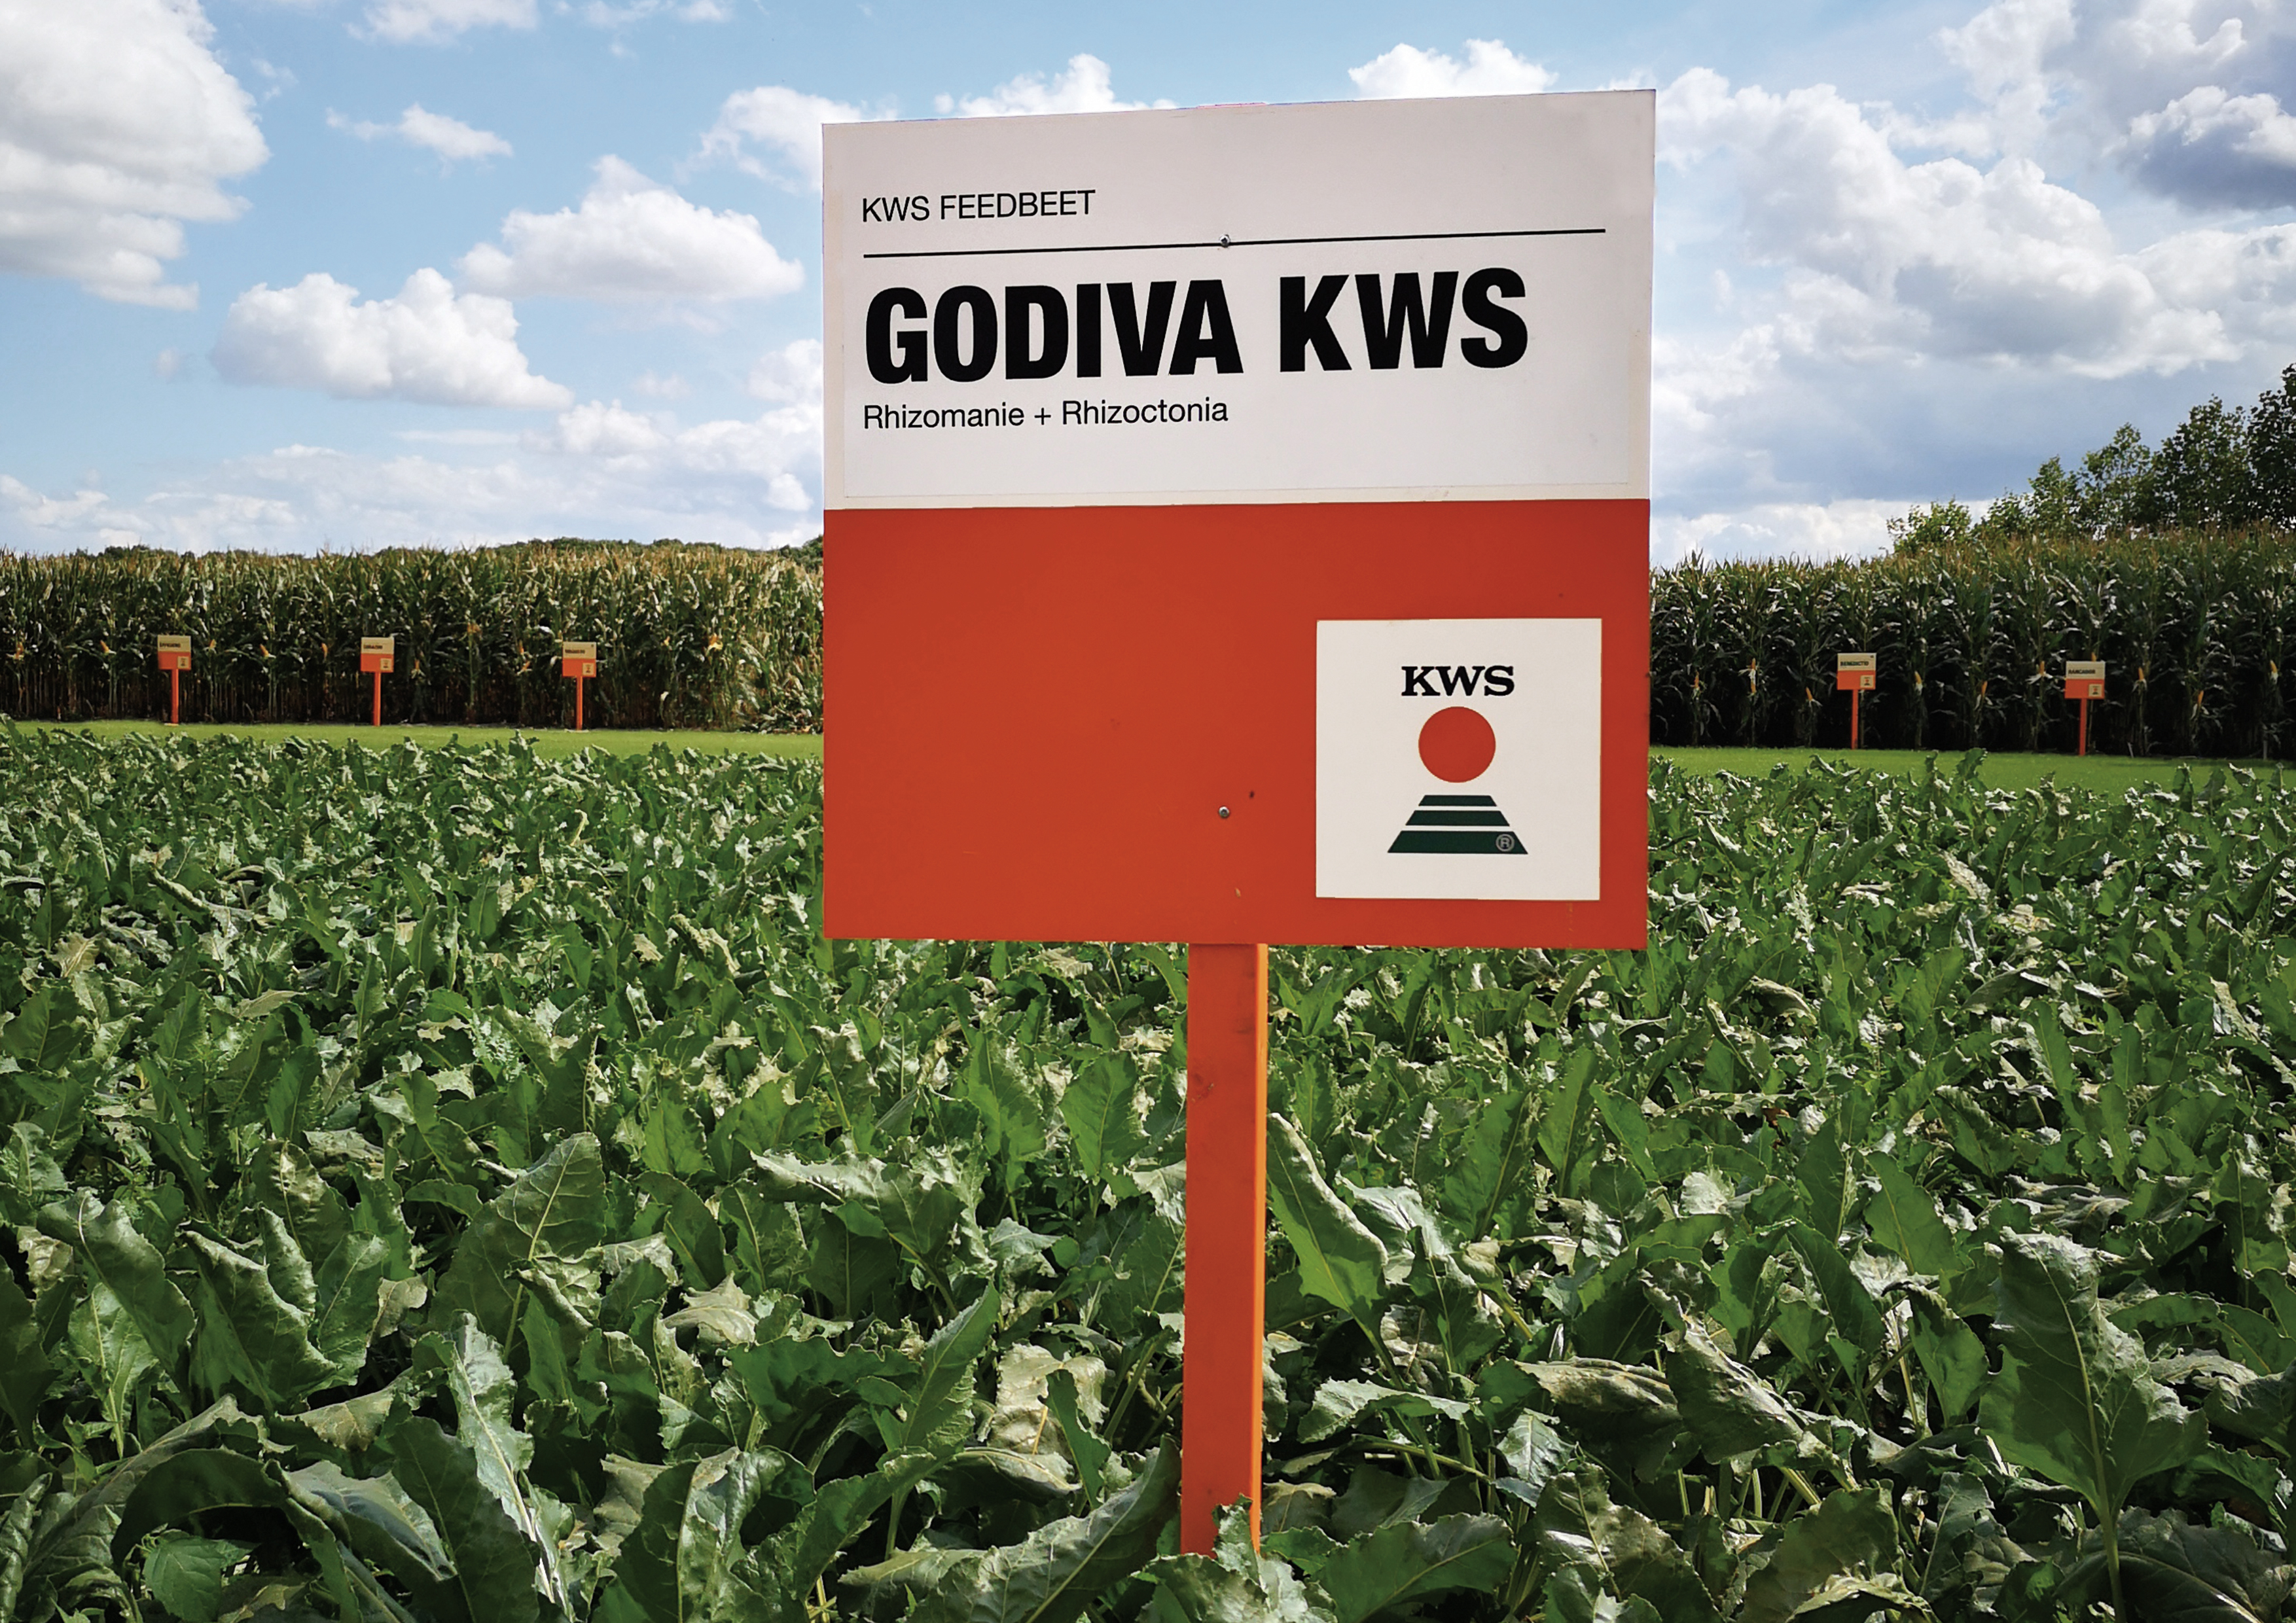 Godiva KWS is omwille van zijn dubbele resistentie zeer geschikt voor de teelt op zandgrond bij biologische telers